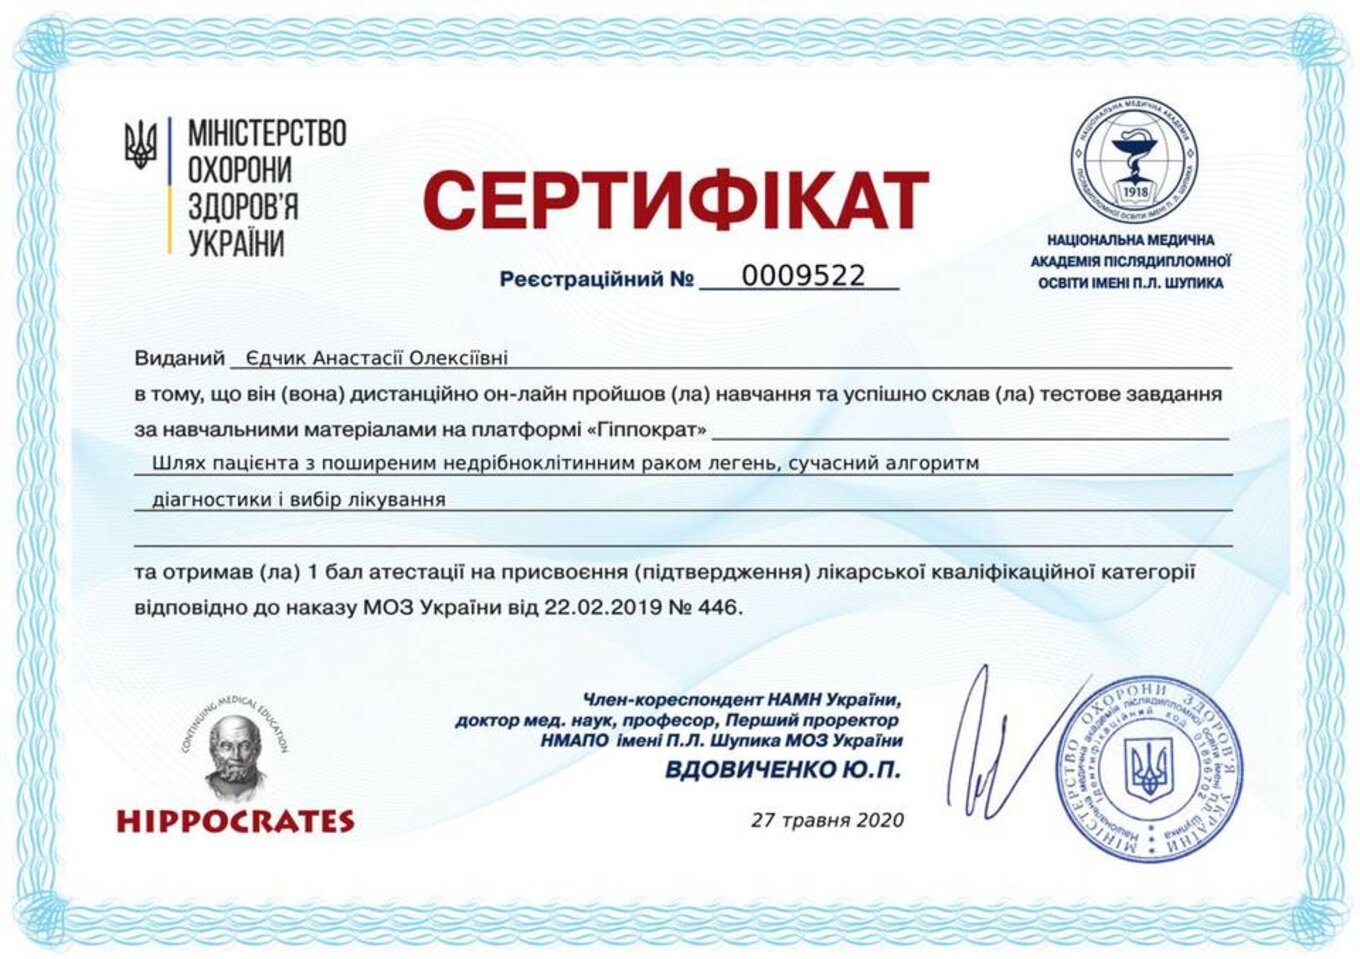 certificates/yedchik-anastasiya-oleksiyivna/erc-edchik-cert-21.jpg